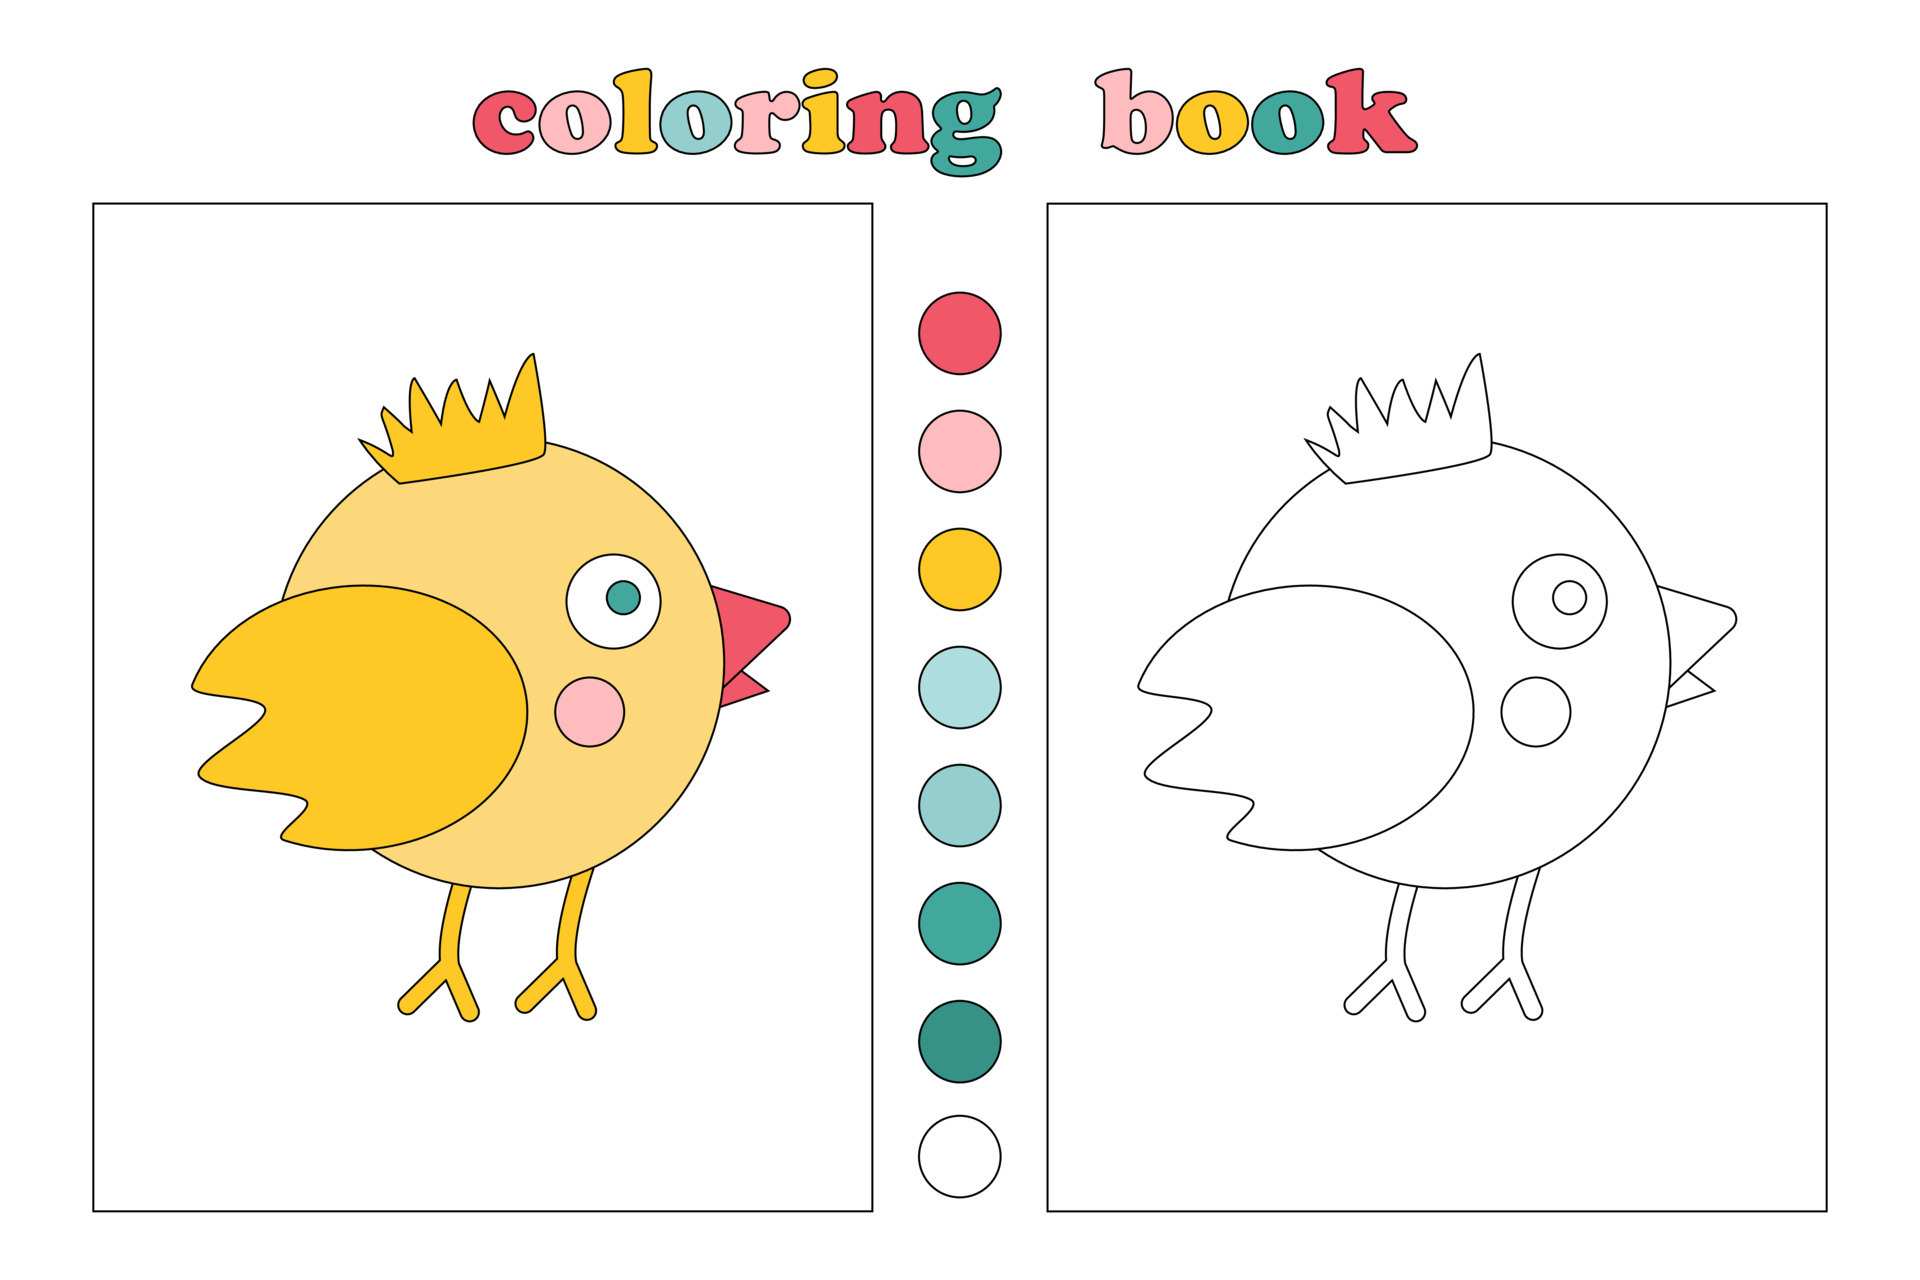 Desenho de Galo e galinha para Colorir - Colorir.com